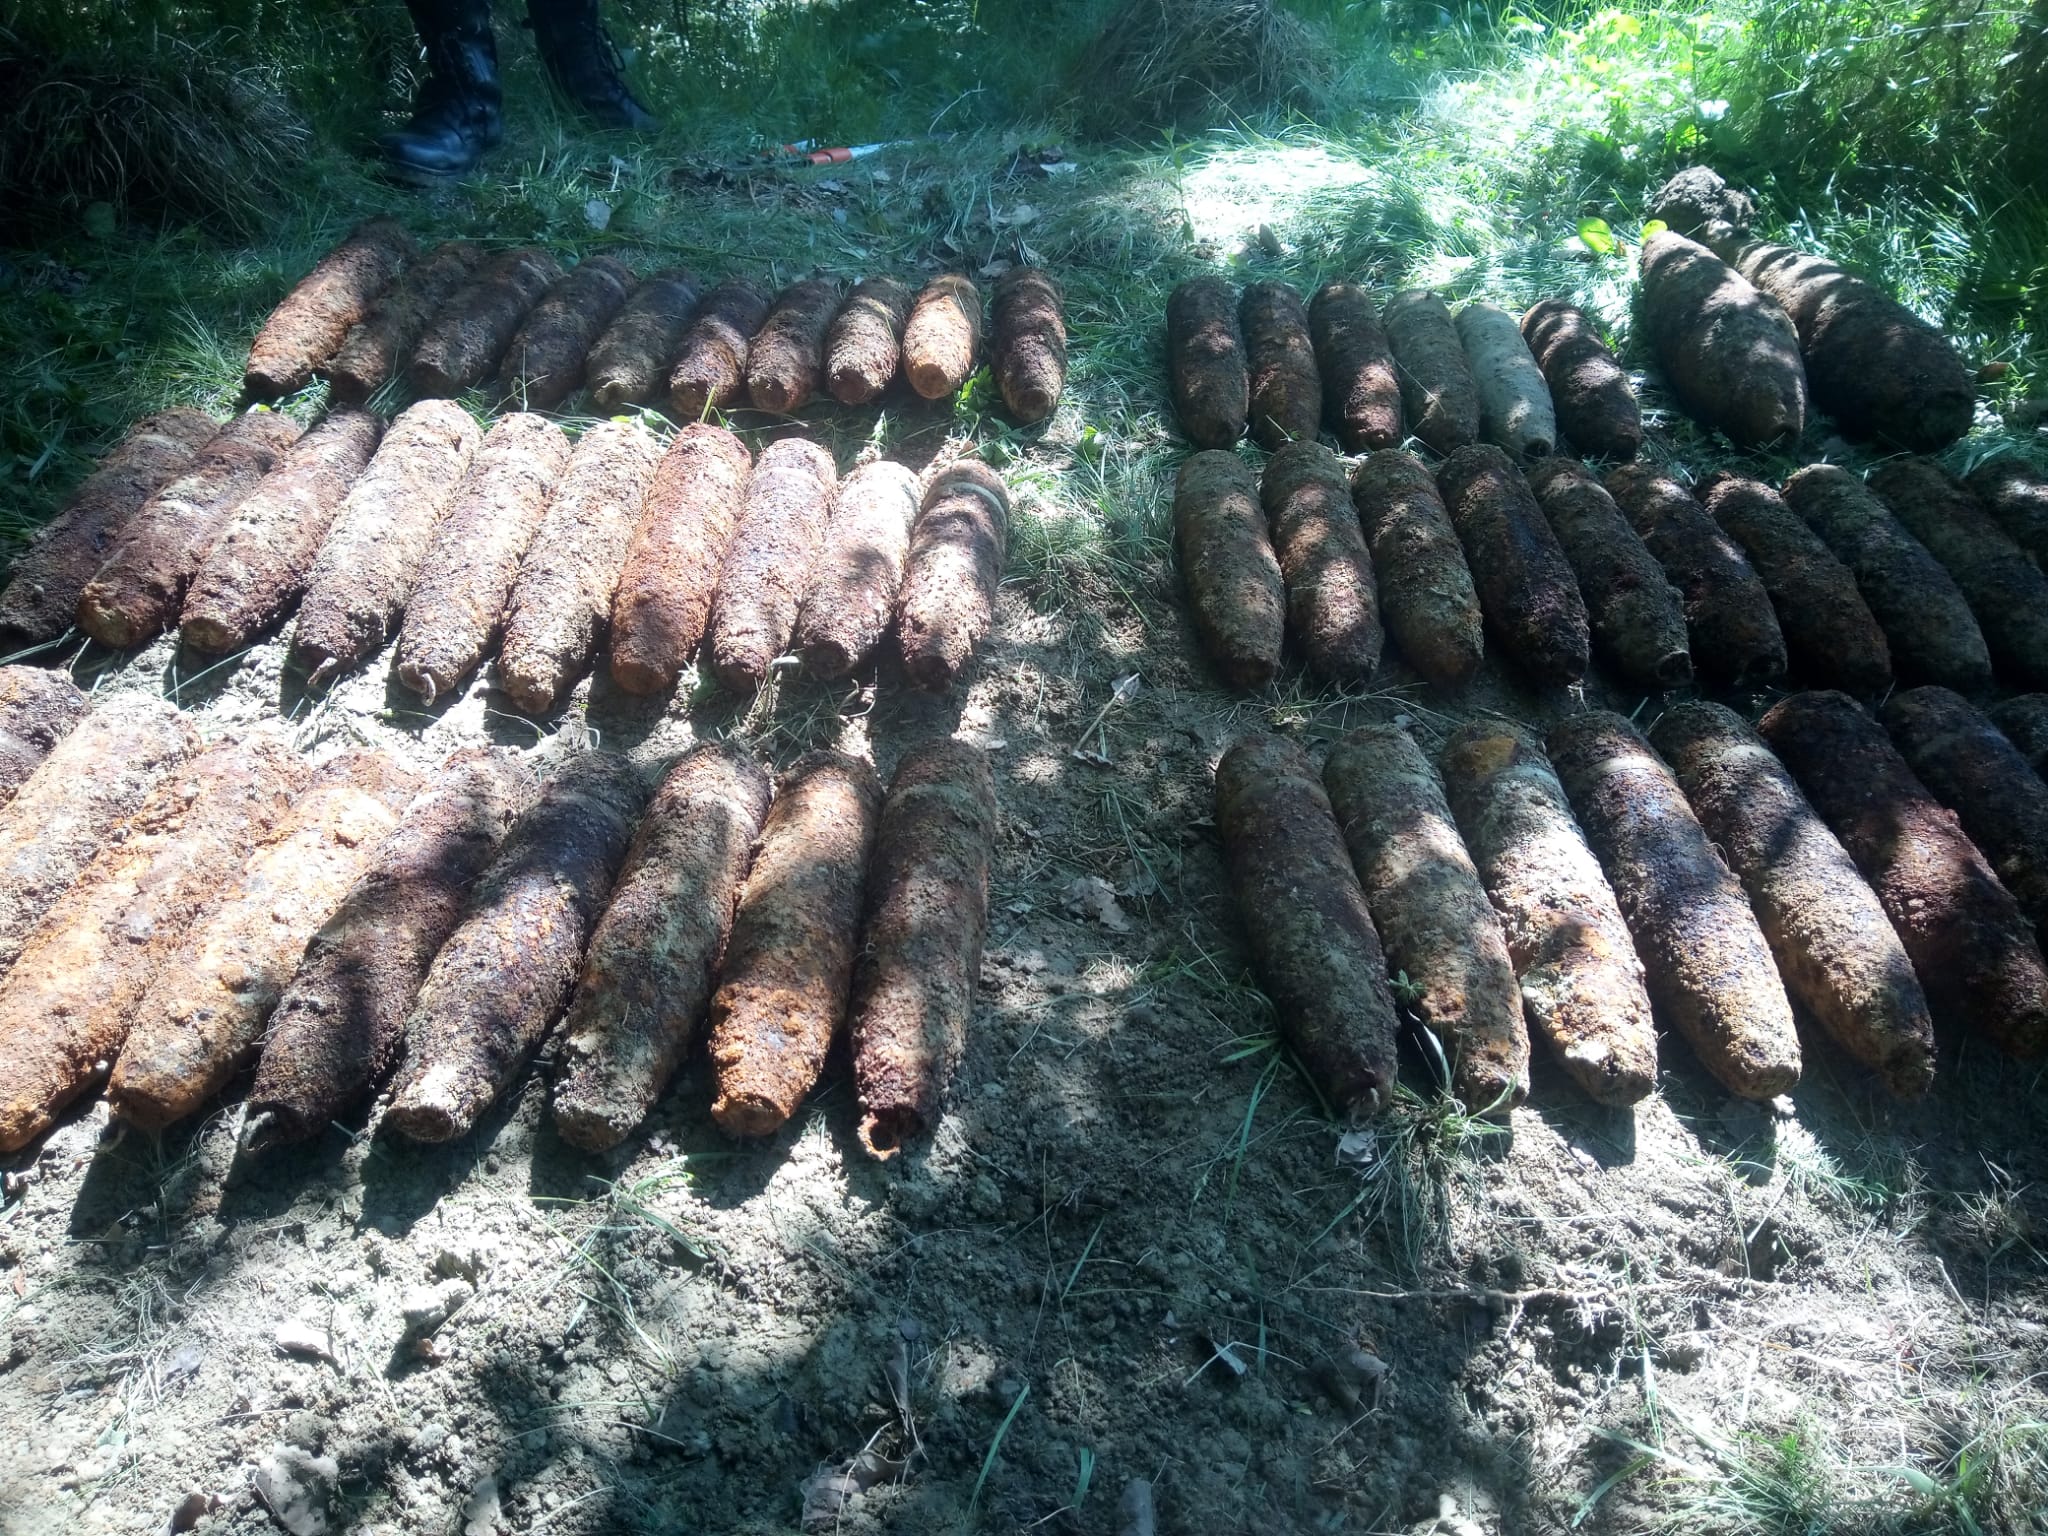 Peste 50 proiectile explozive, descoperite pe un teren în Neamţ